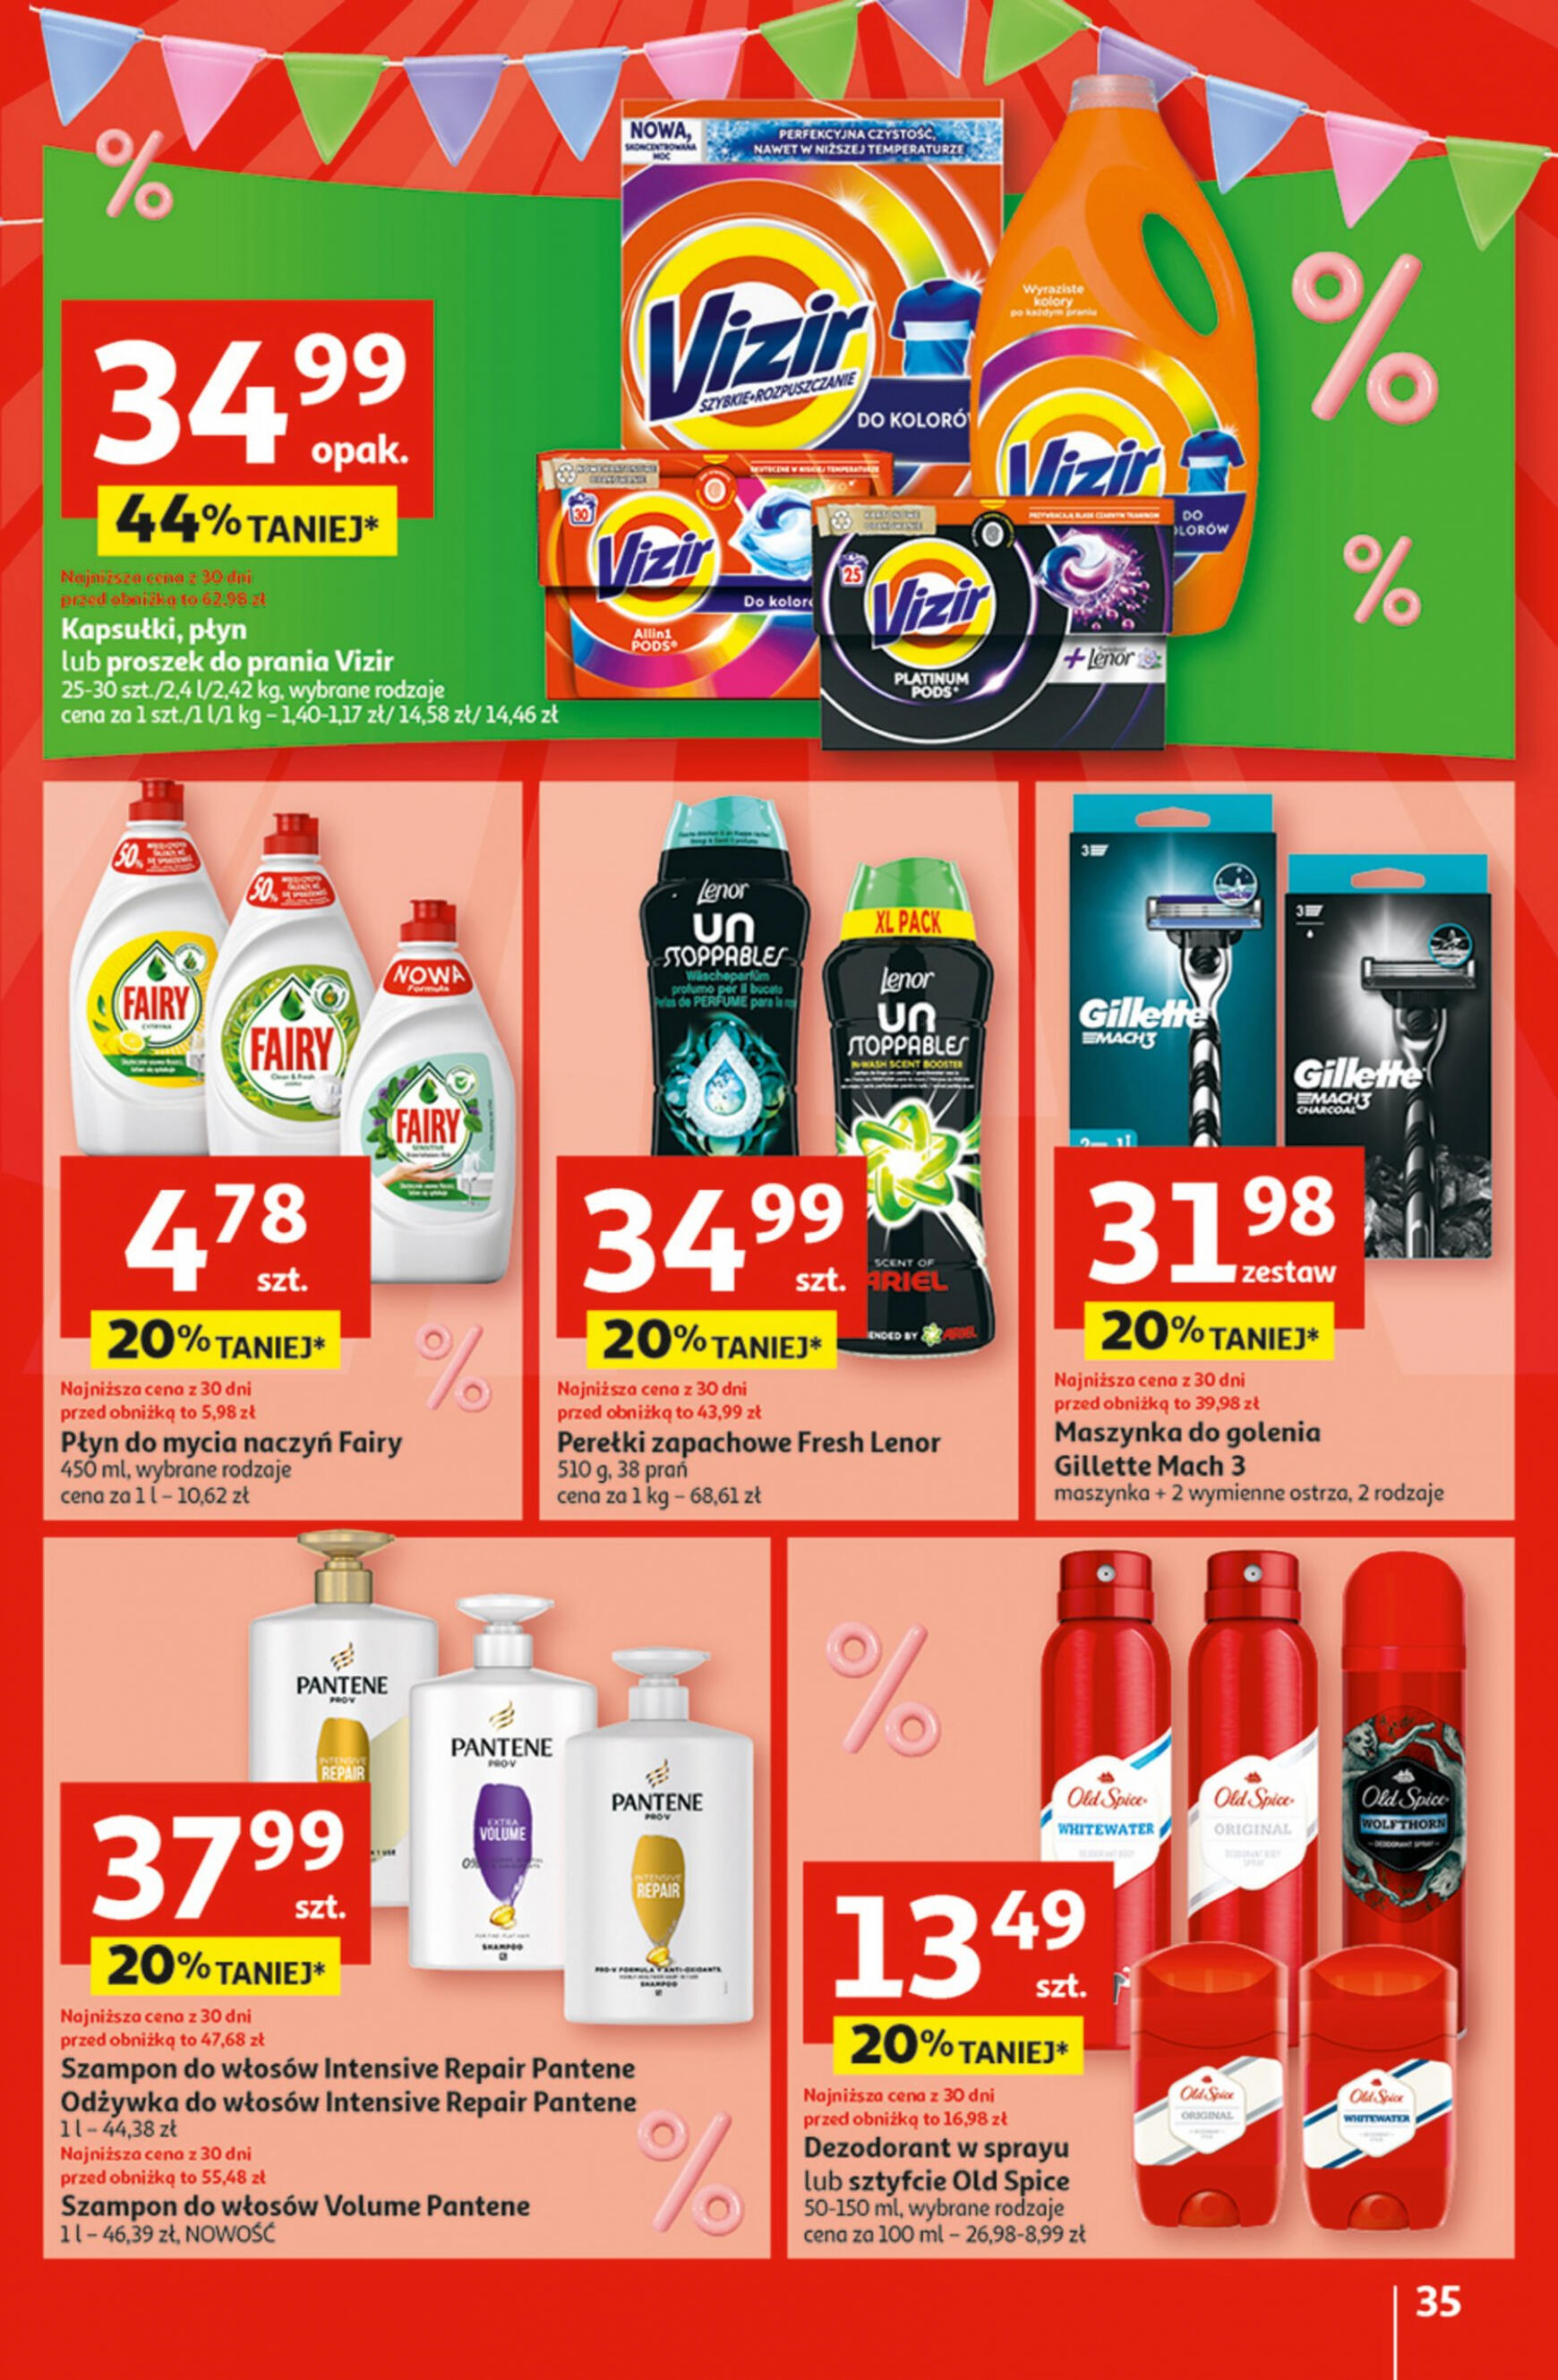 auchan - Hipermarket Auchan - Gazetka Jeszcze taniej na urodziny gazetka aktualna ważna od 02.05. - 08.05. - page: 35